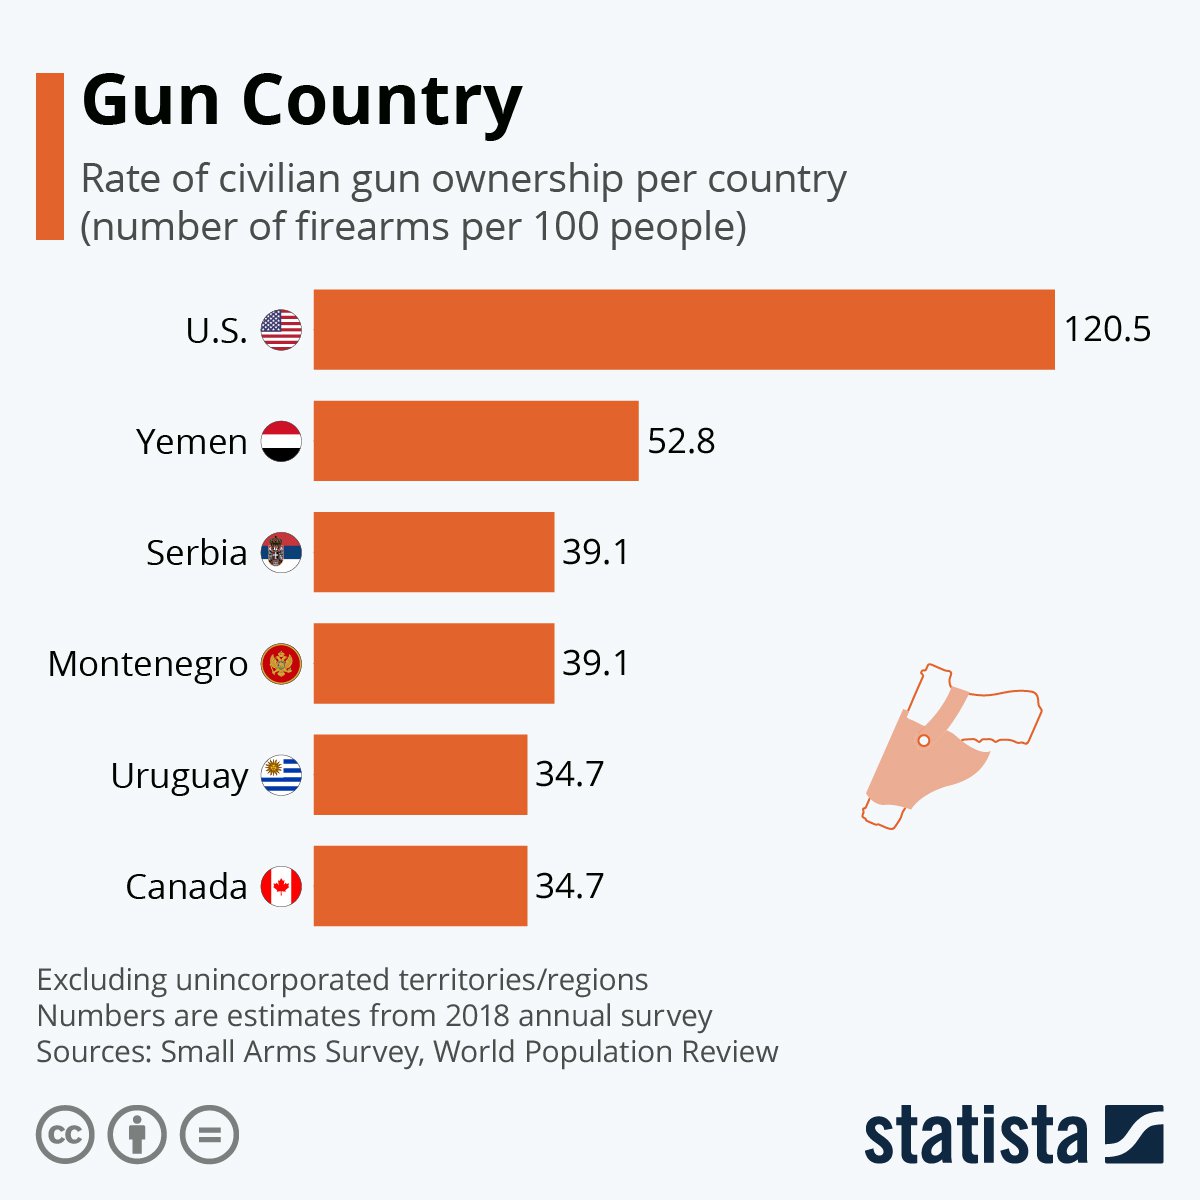 Шість провідних країн за кількістю зброї на сотню населення